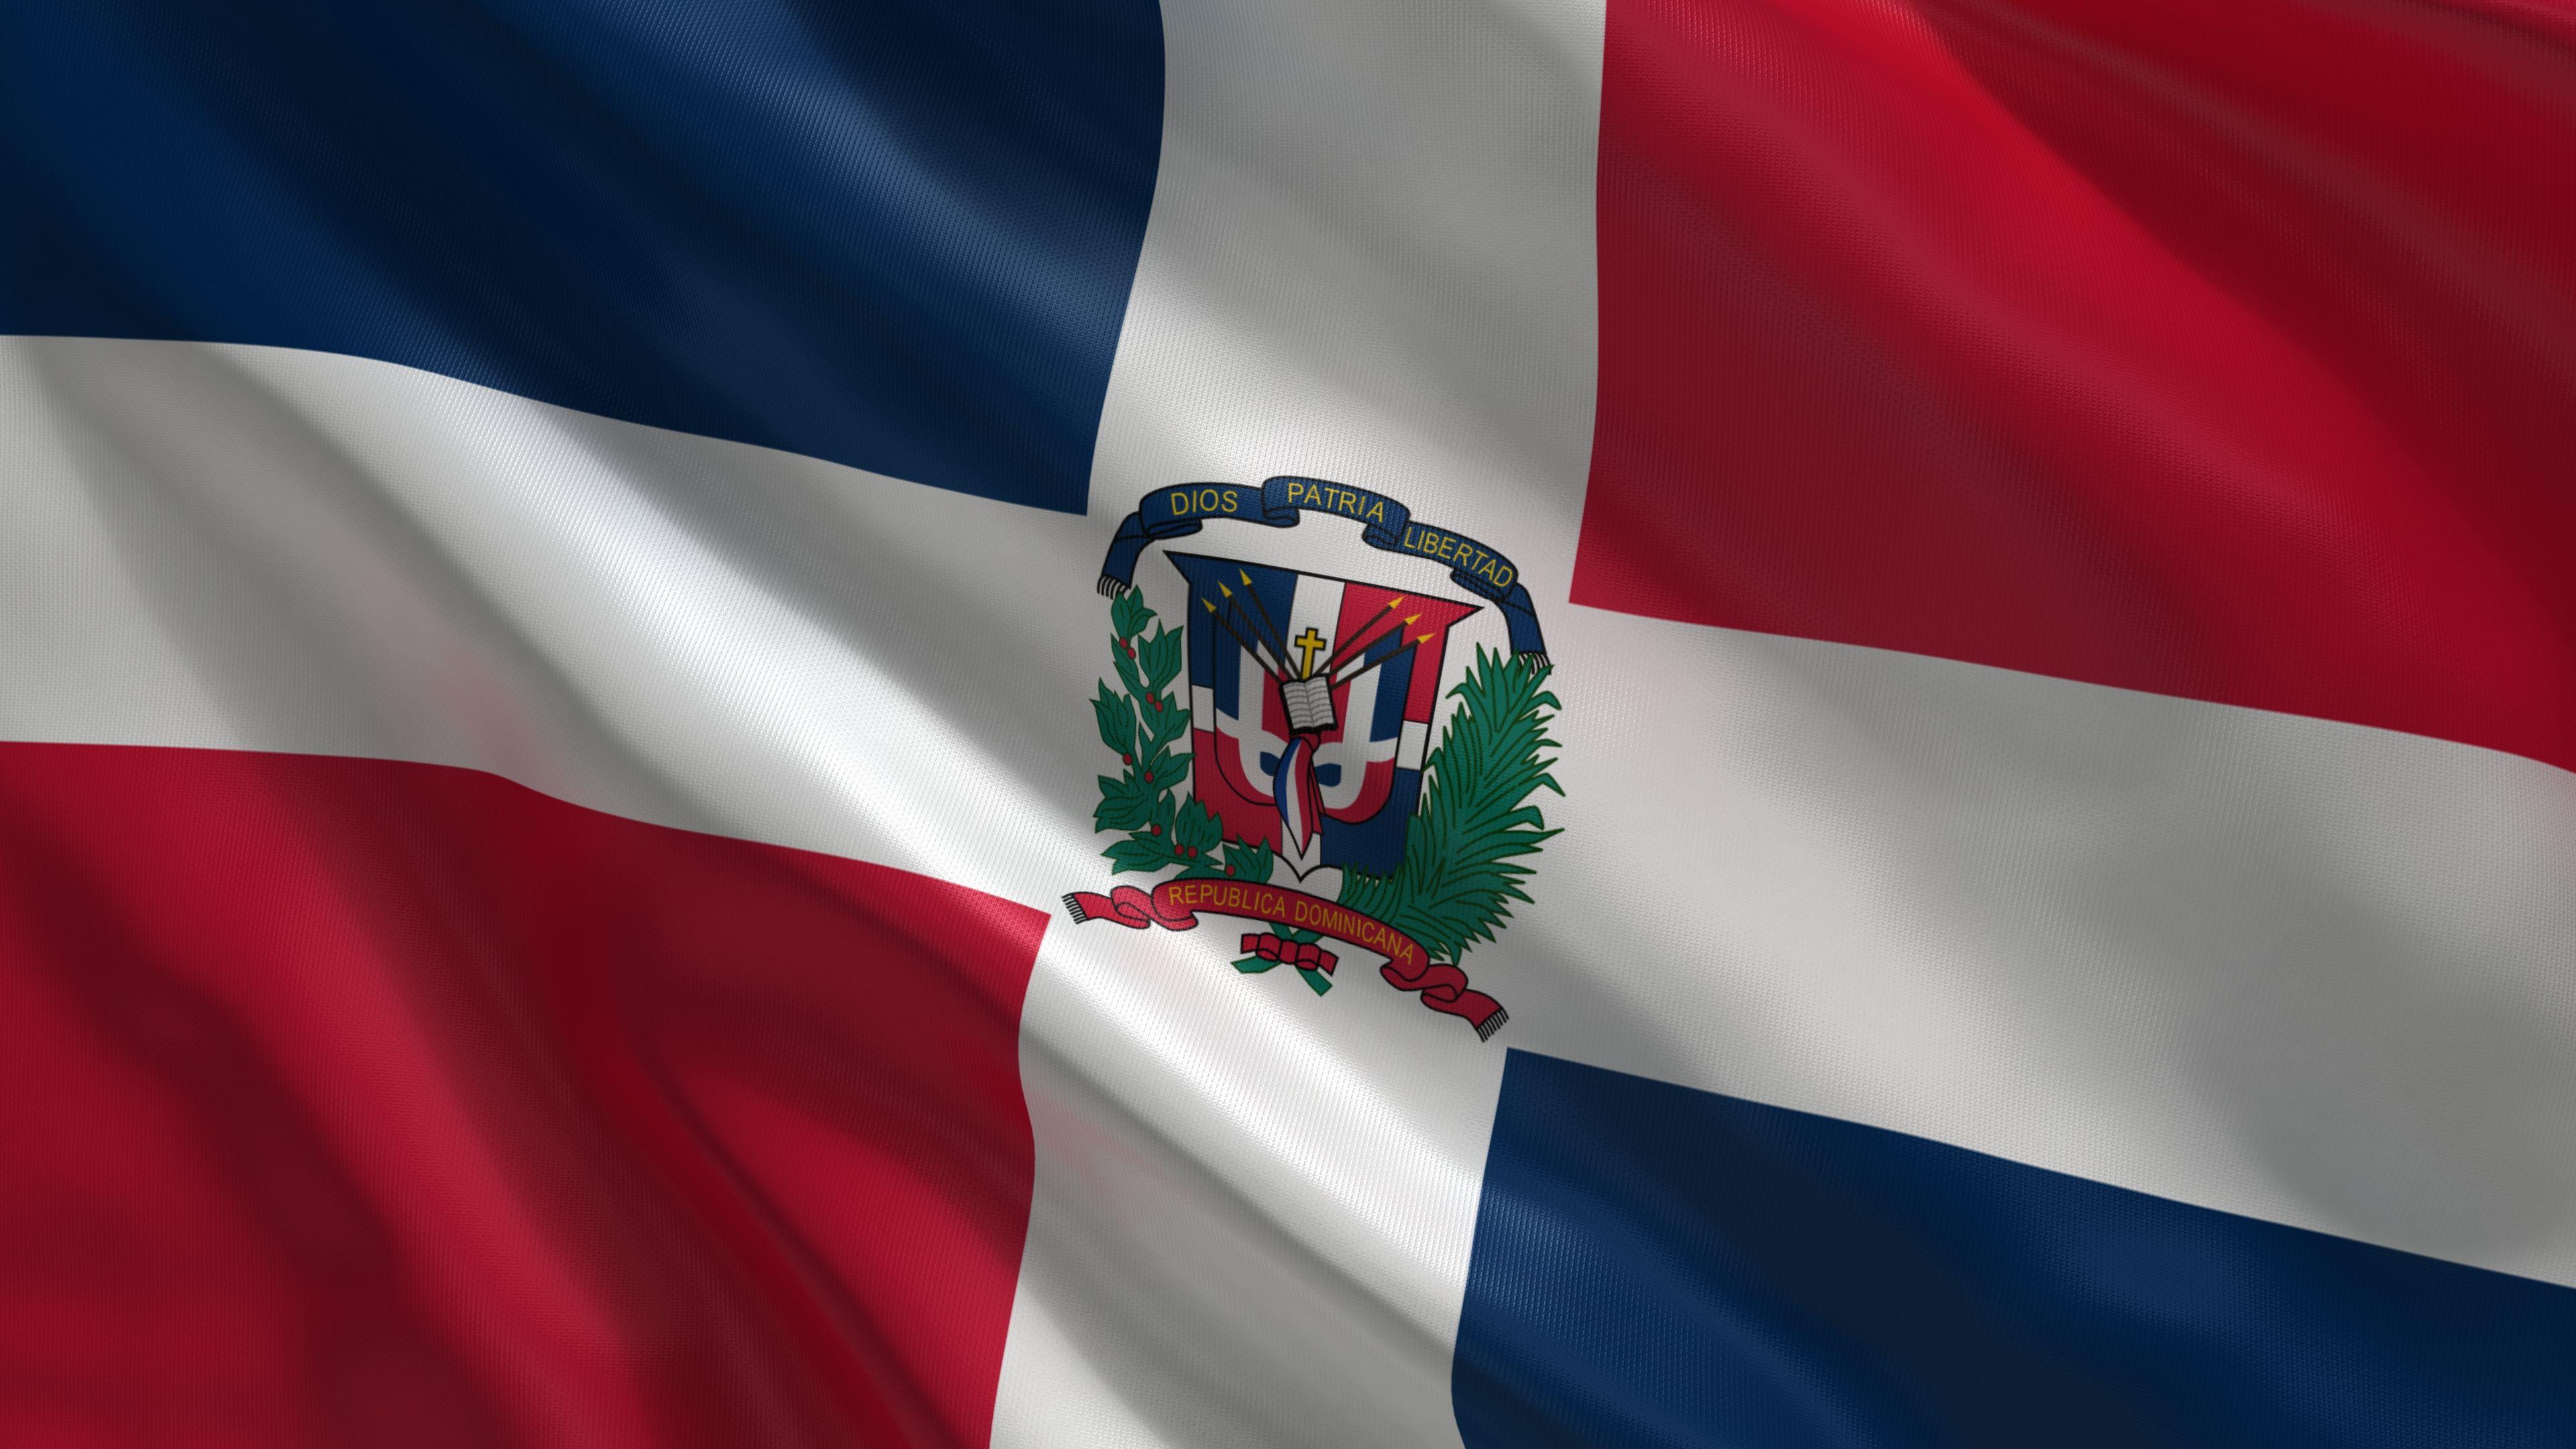 Bandera, republica dominicana, flag, bandera republica dominicana